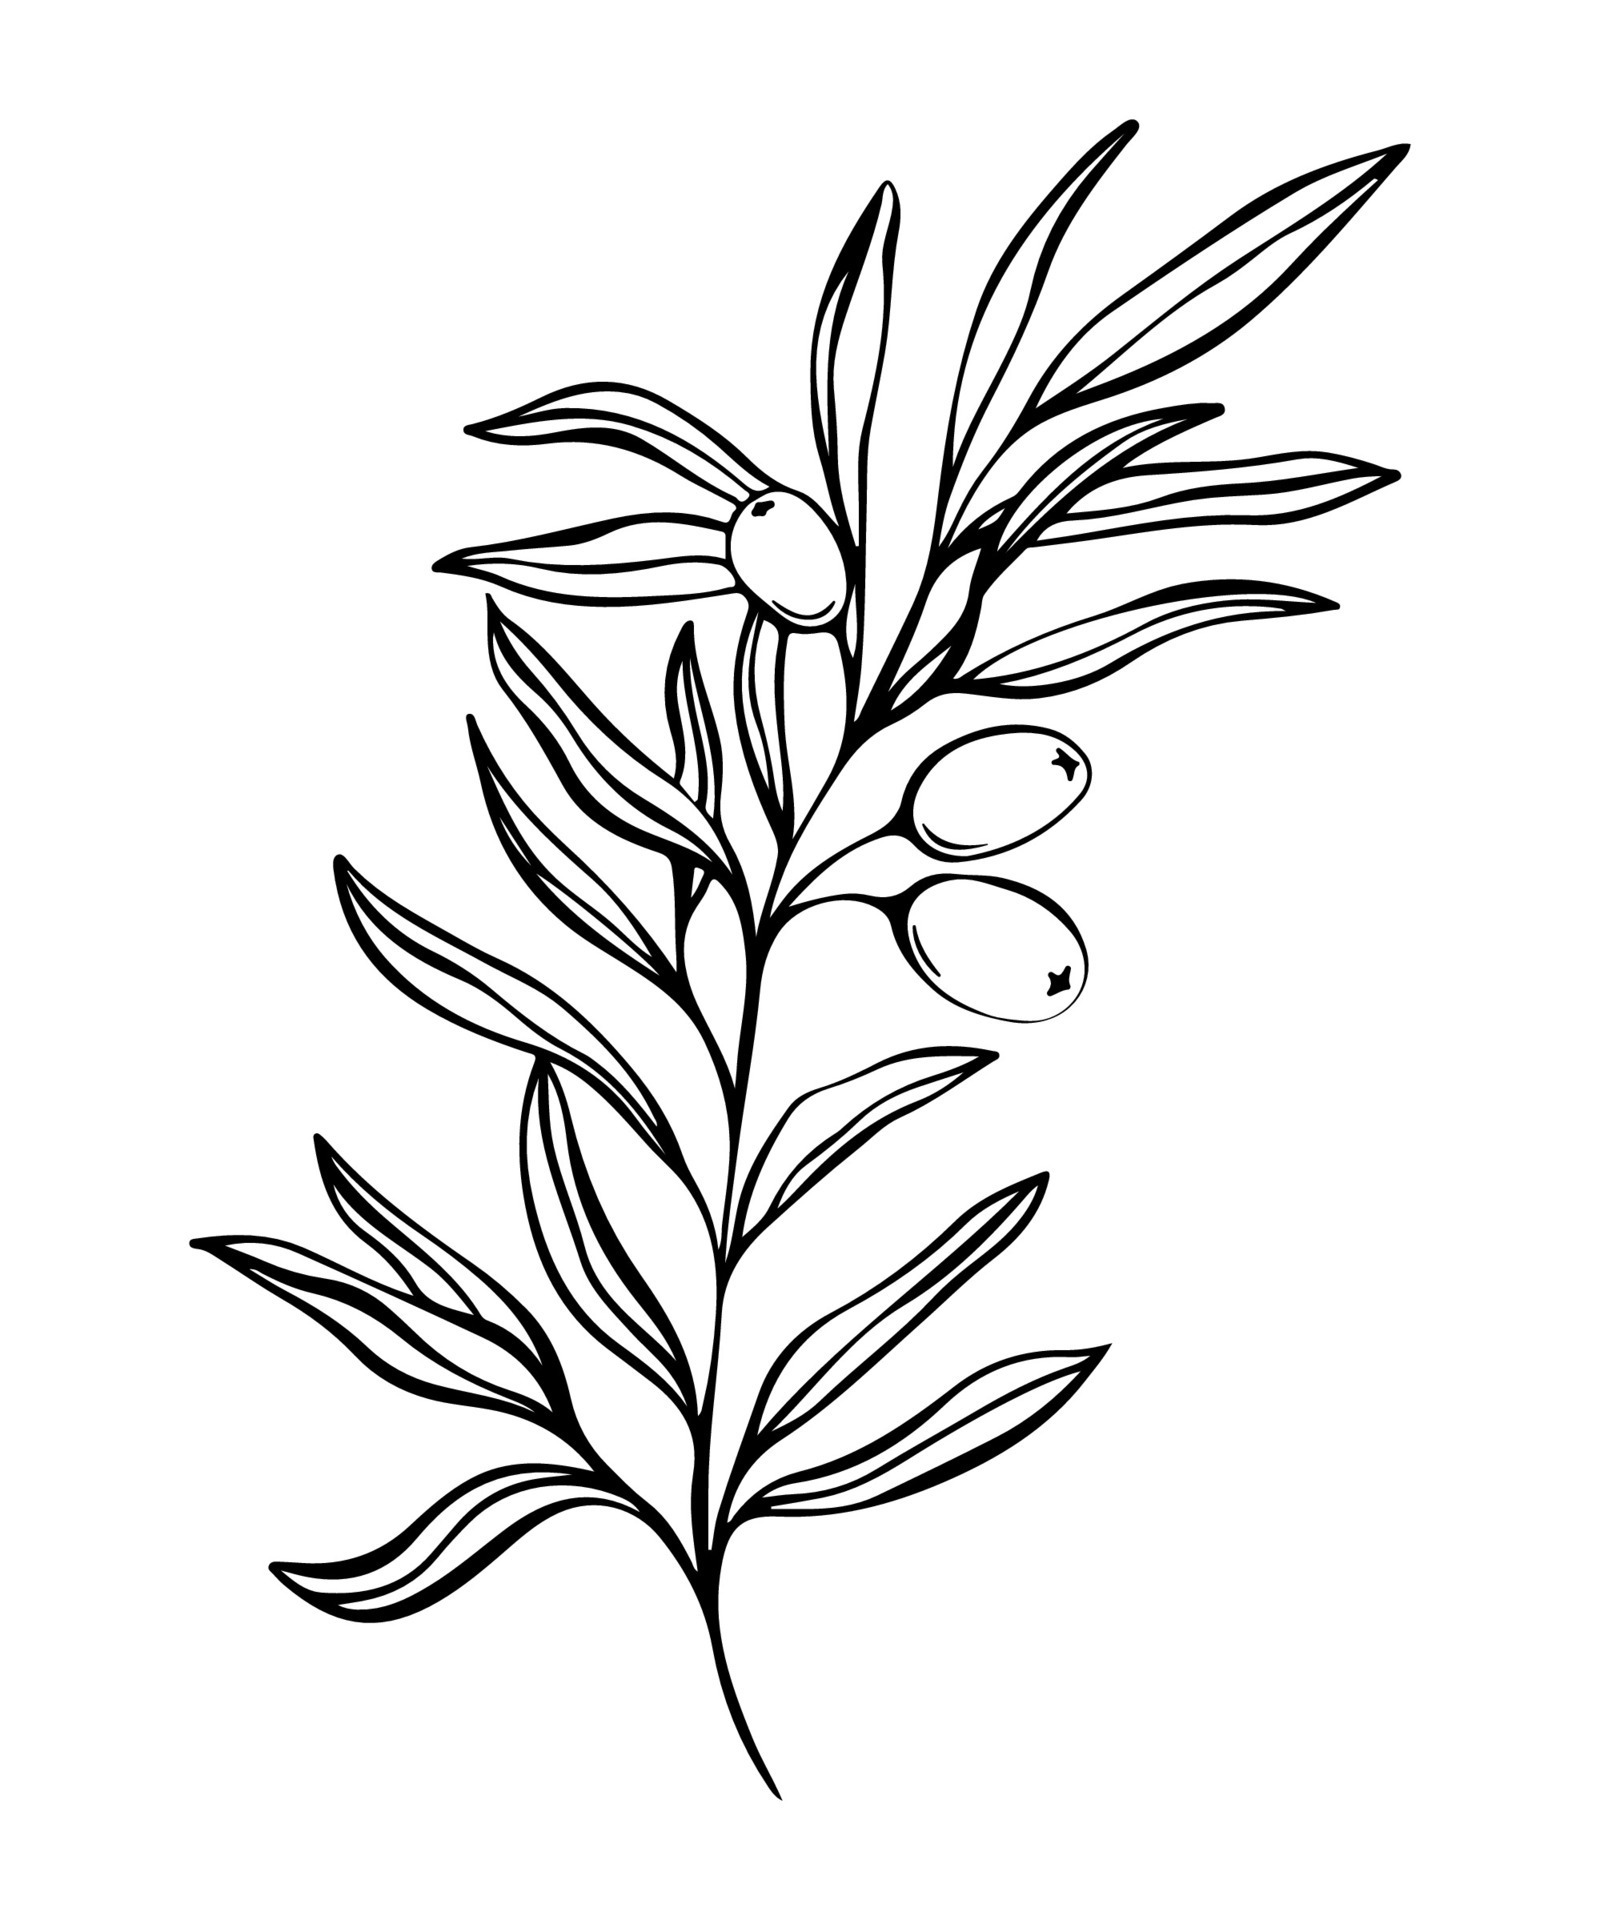 Botanical line illustration of olive leaves, branch for wedding ...